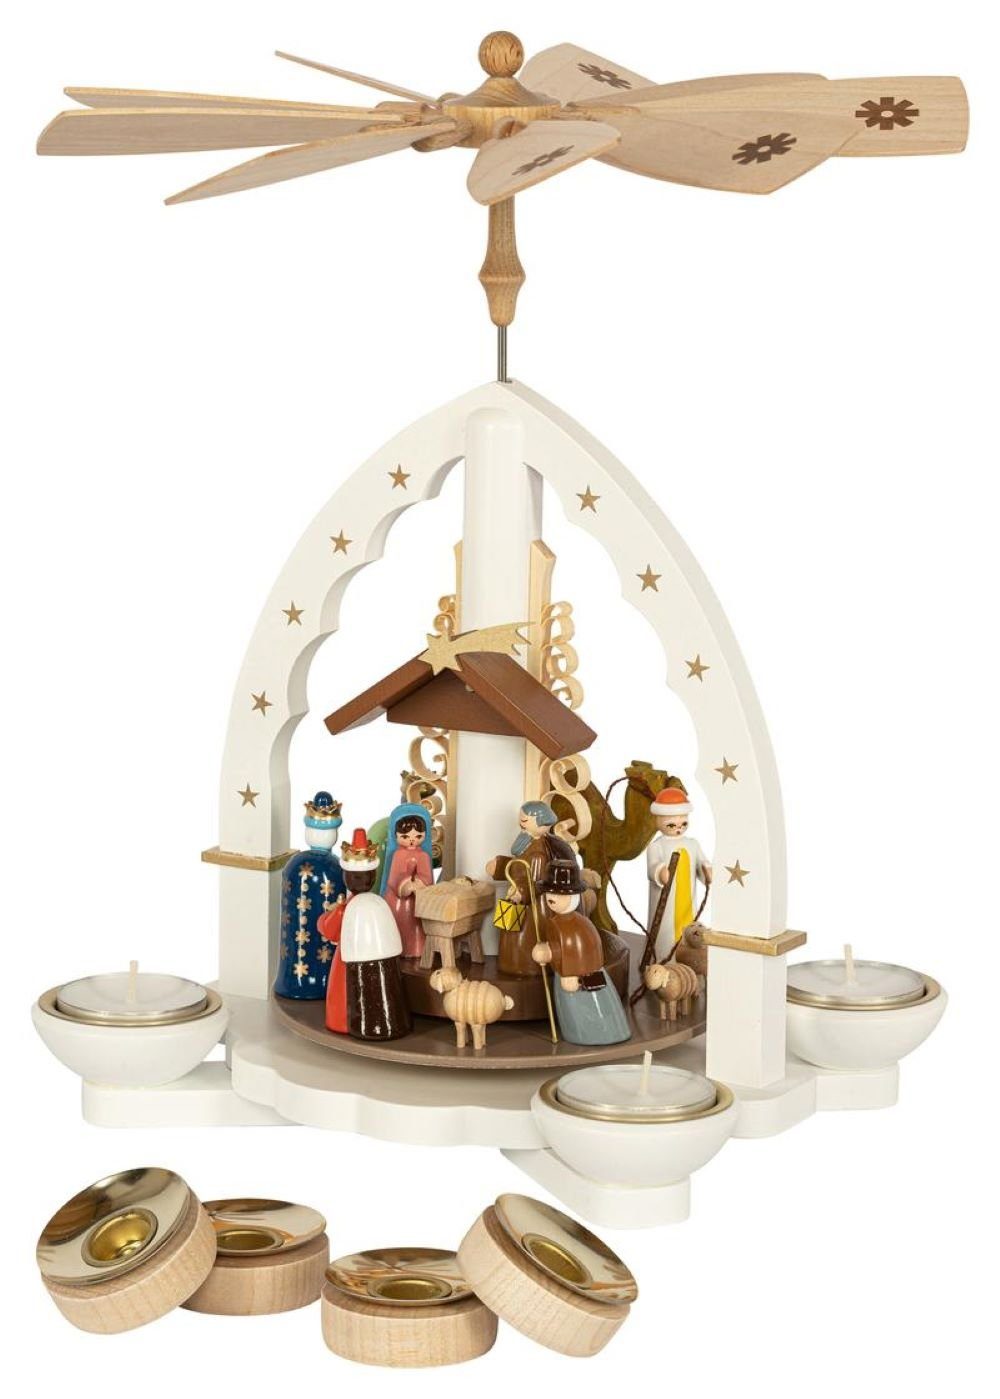 Richard Glaesser Weihnachtspyramide Heilige Familie weiß für Teelicht und Kerzen direkt vom Hersteller, Handwerkskunst aus dem Erzgebirge | Weihnachtspyramiden